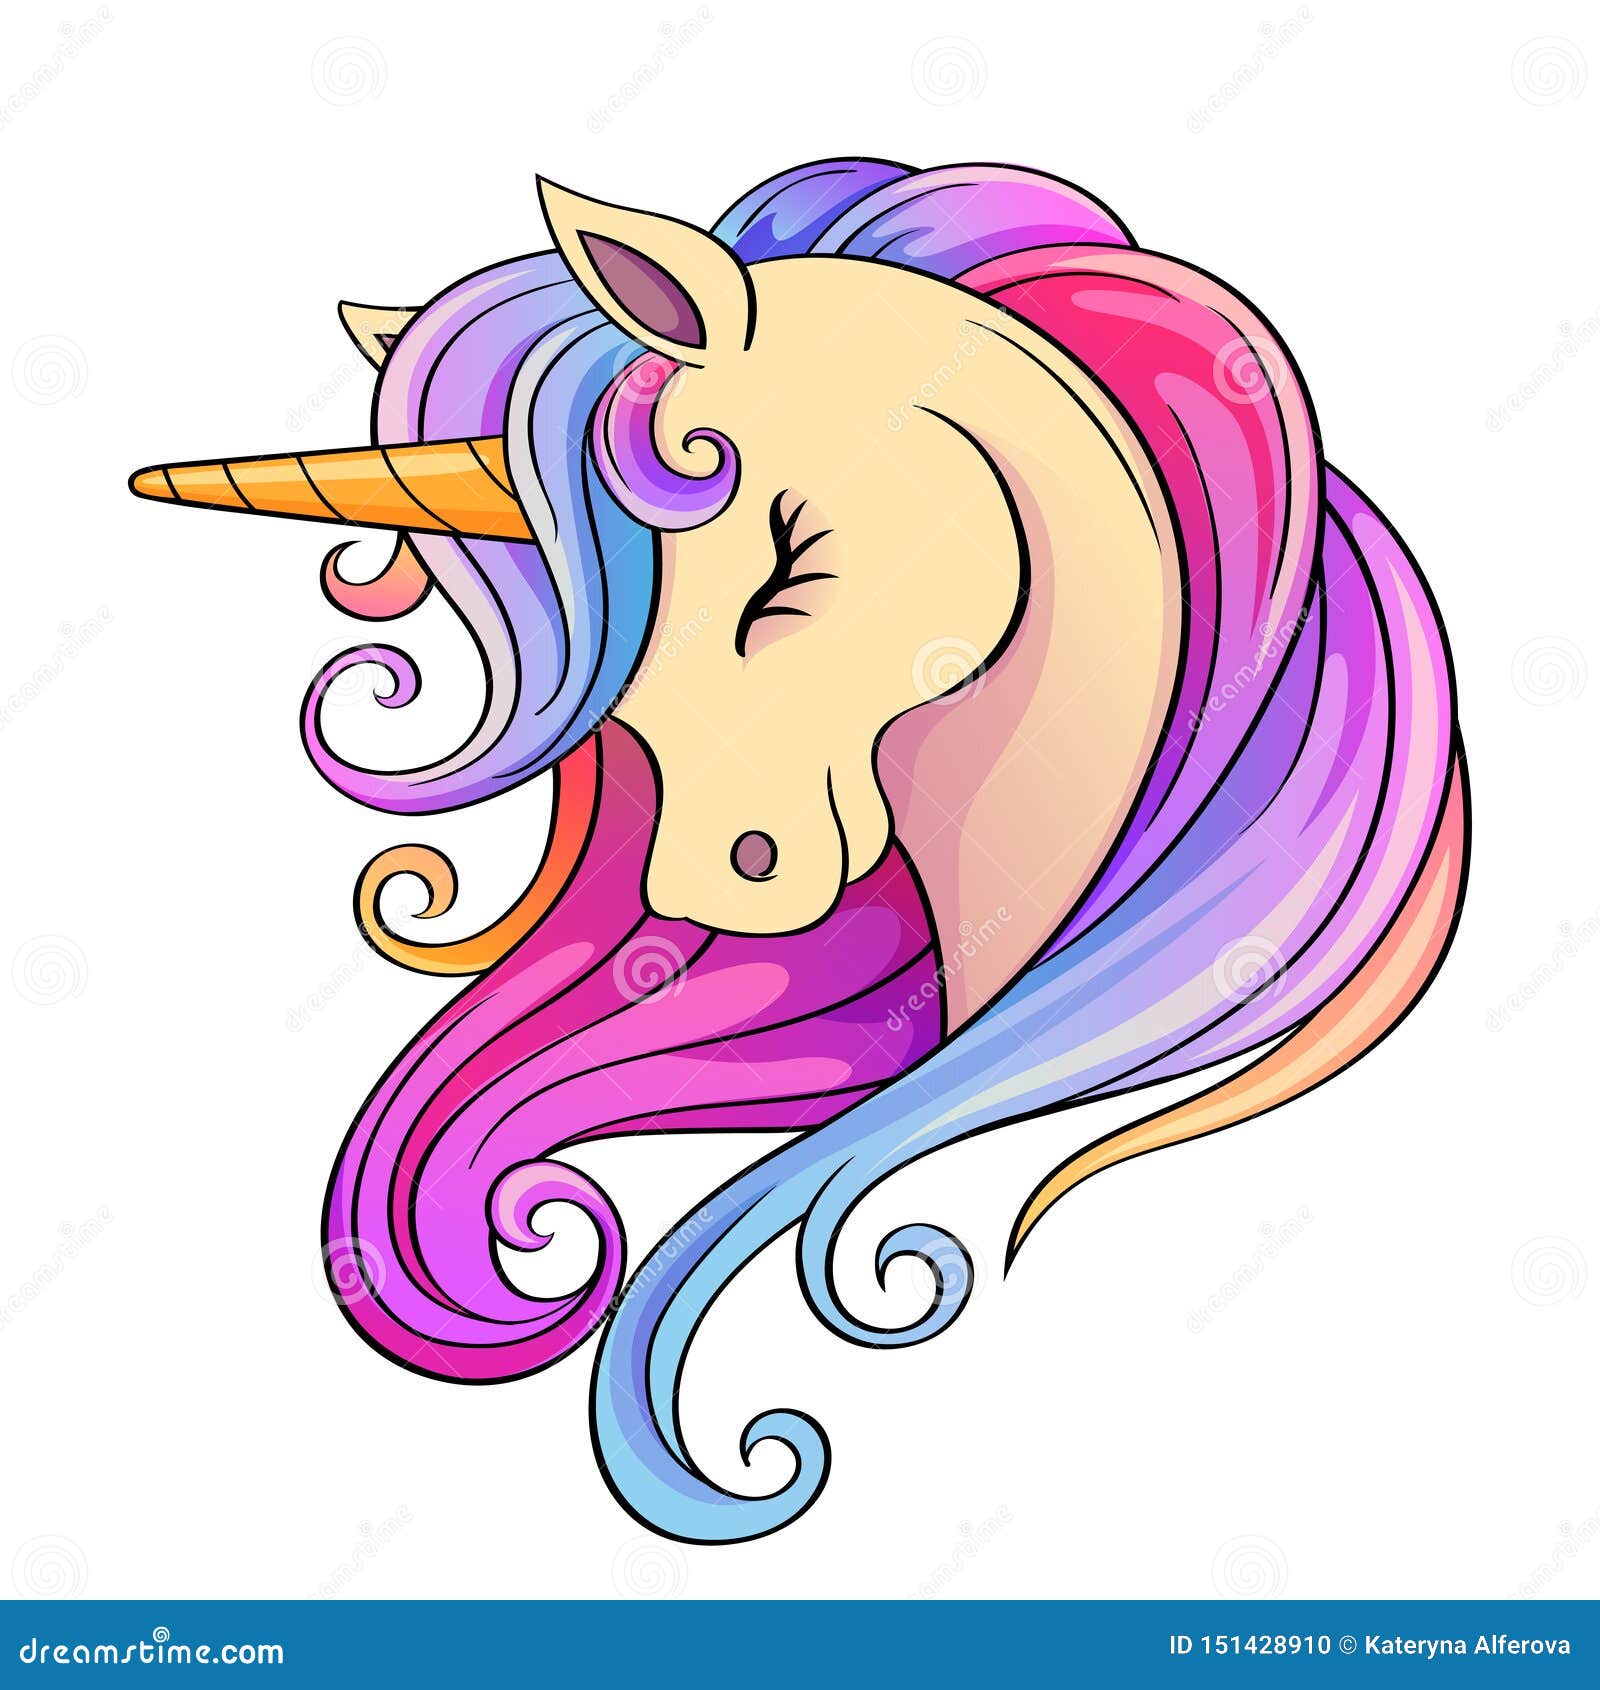 Cute Cartoon Unicorn Head With Rainbow Mane Stock Vector